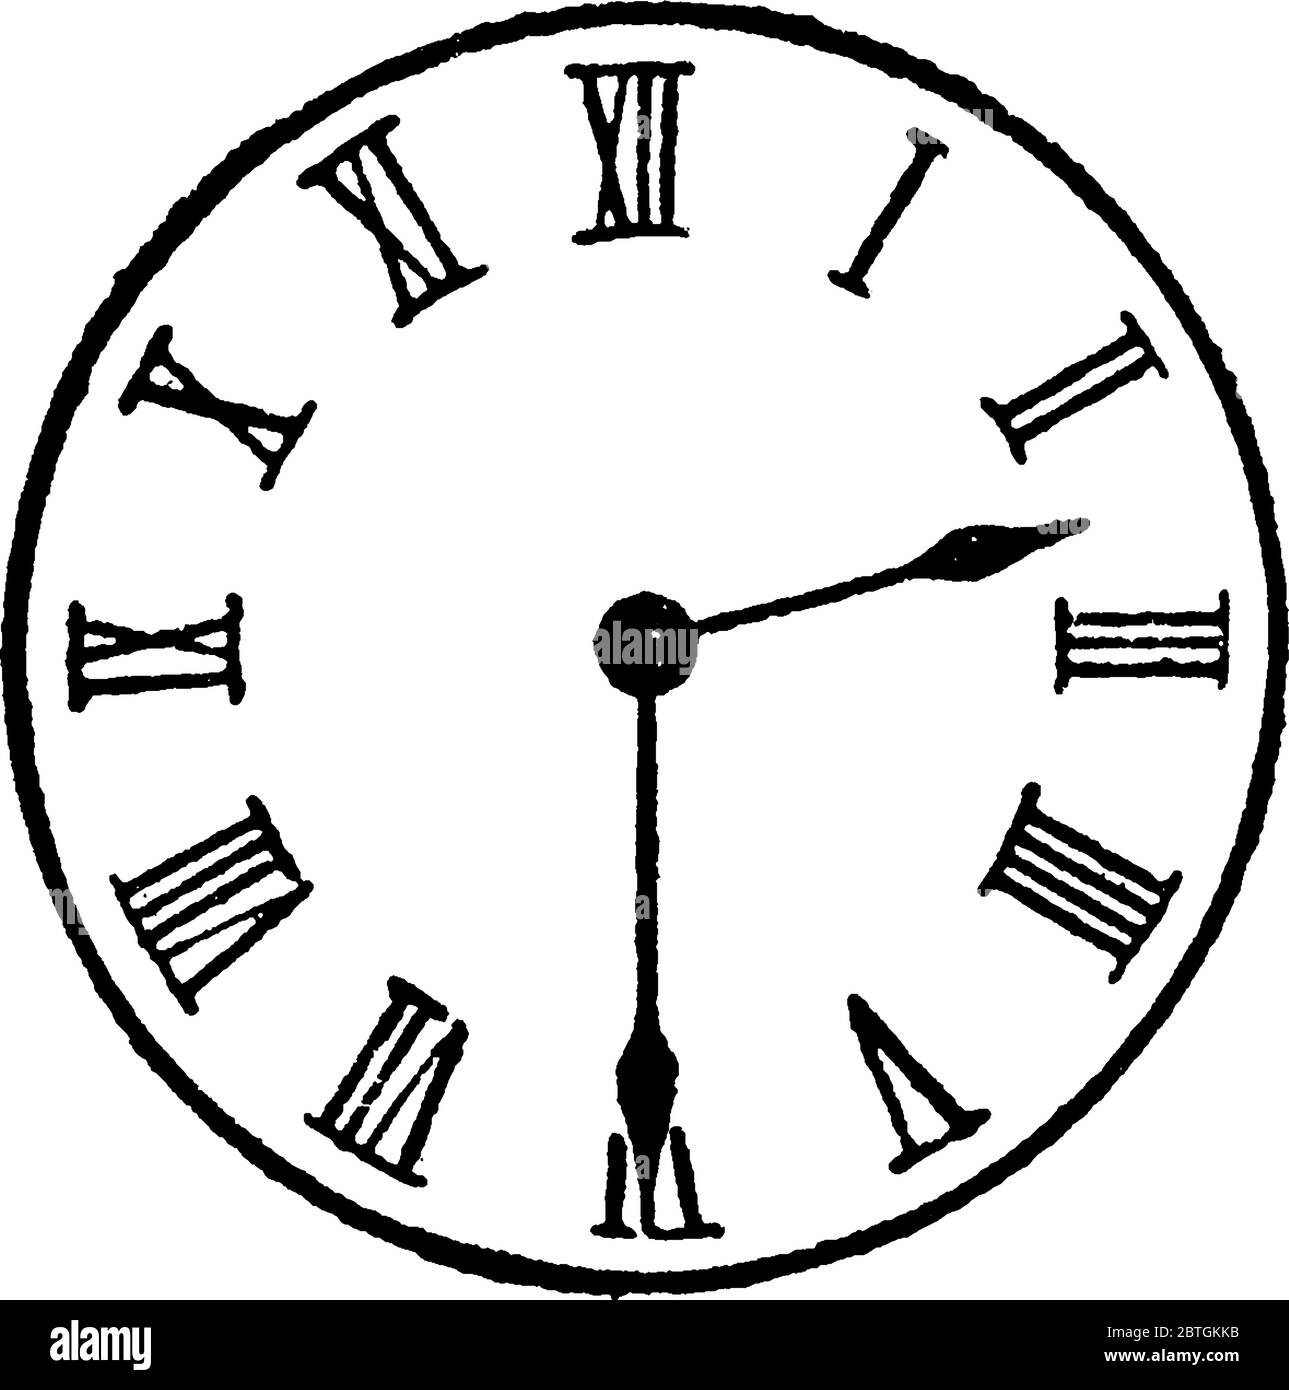 Abbildung zeigt analoge Uhr mit römischen Zahlen, und seine Hälfte nach  zwei auf der Uhr, Vintage-Linie Zeichnung oder Gravur Illustration  Stock-Vektorgrafik - Alamy